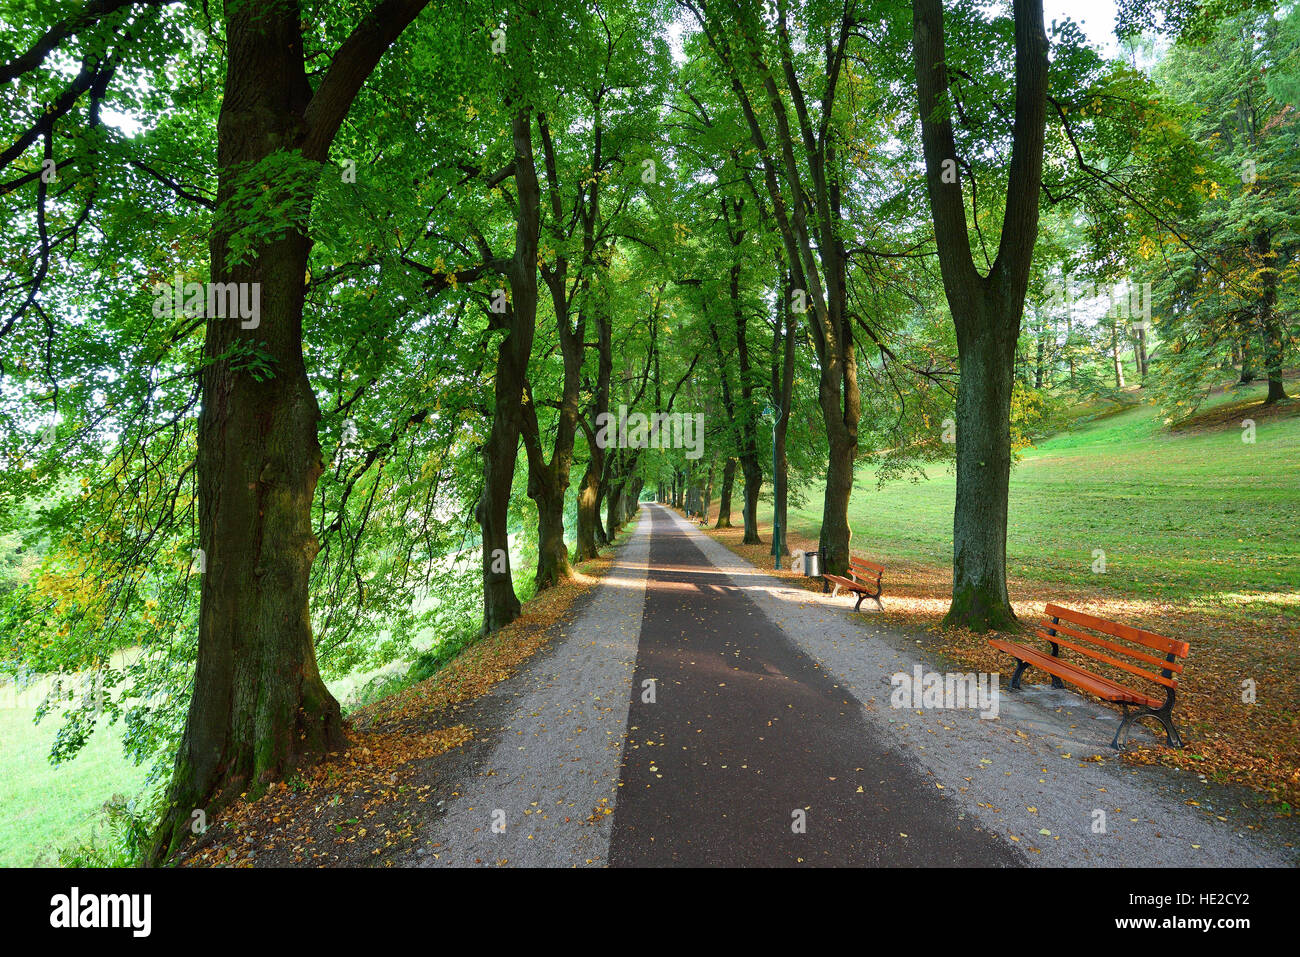 Largo callejón de árboles verdes con una carretera recta Foto de stock